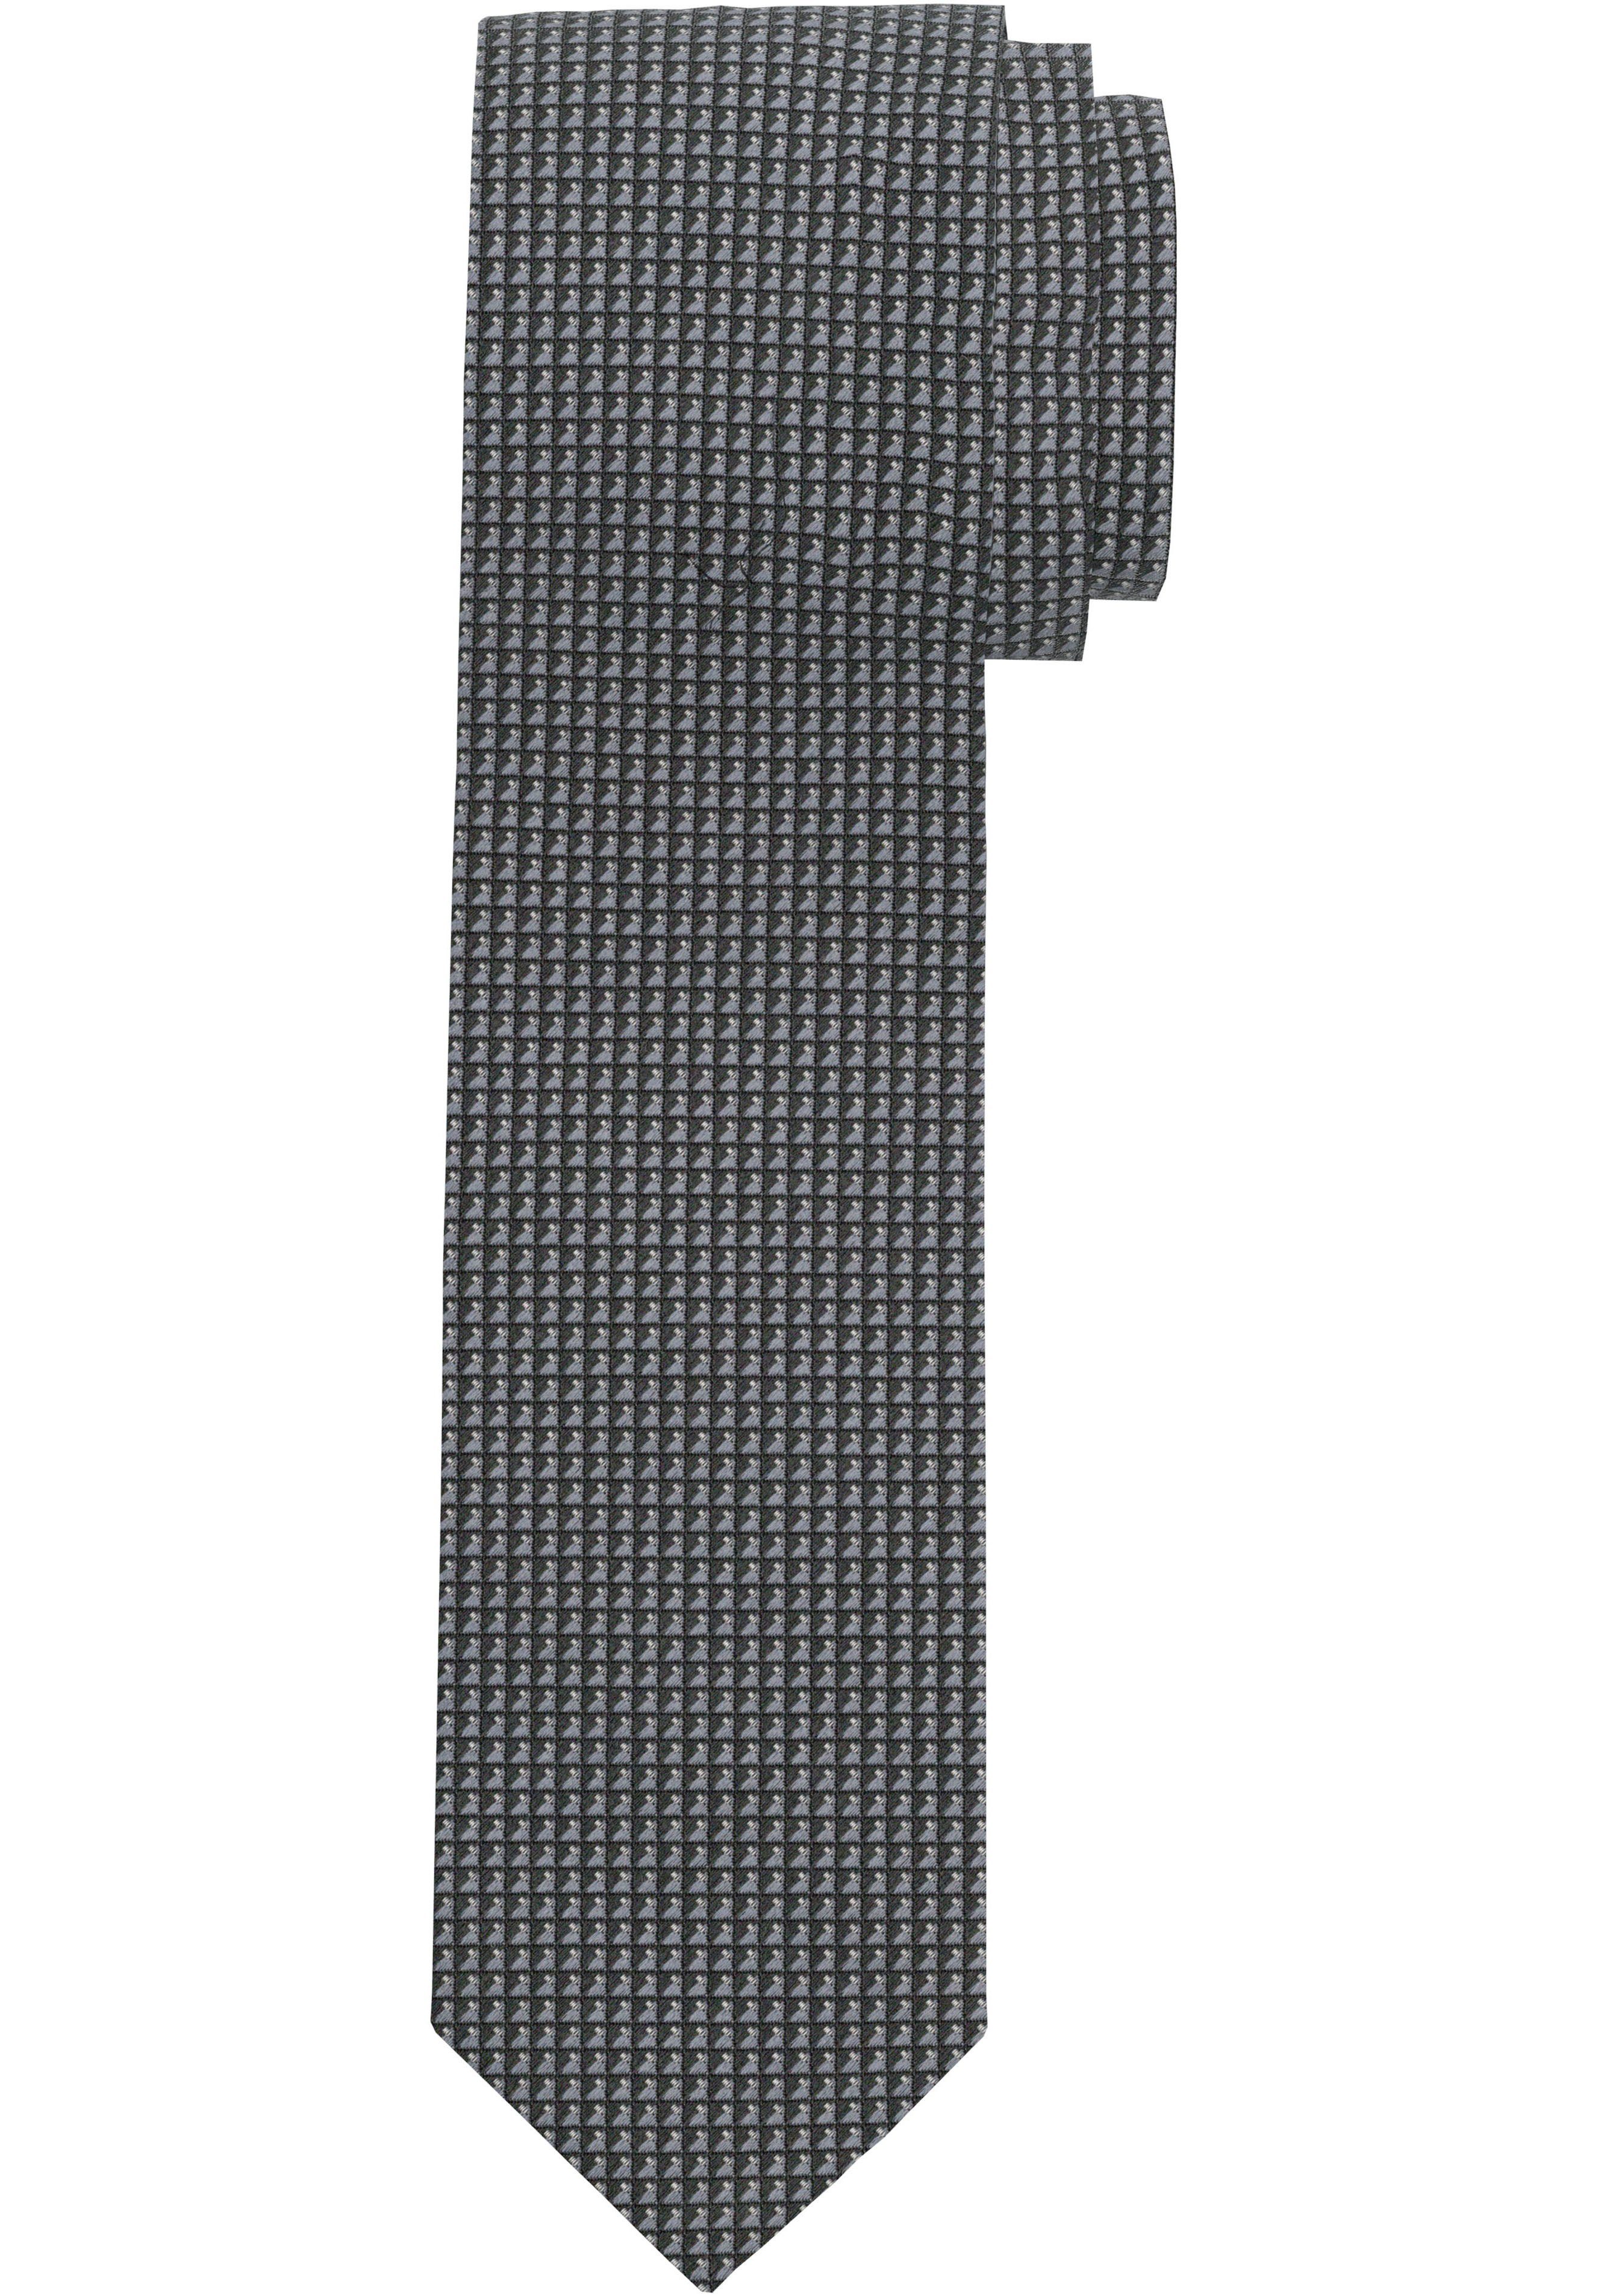 OLYMP Krawatte Strukturierte grau Krawatte